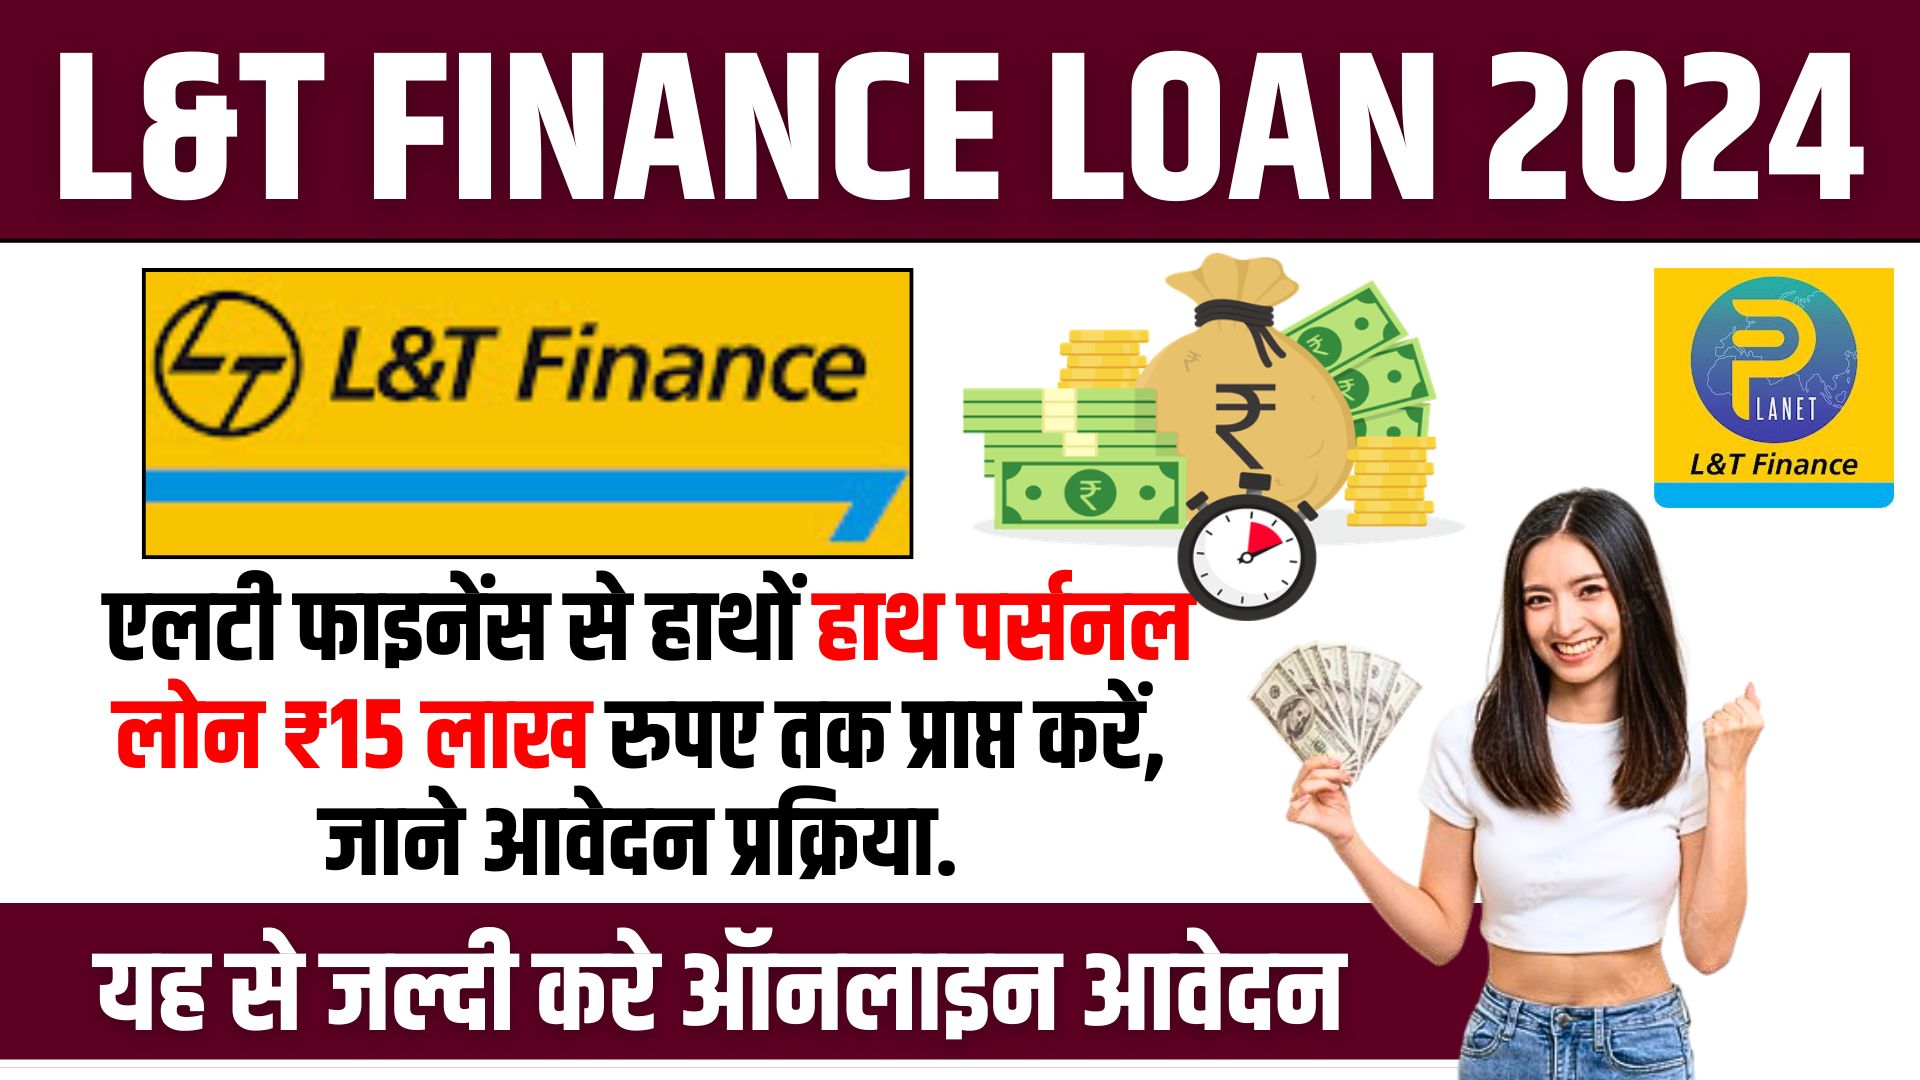 L&T Finance Loan